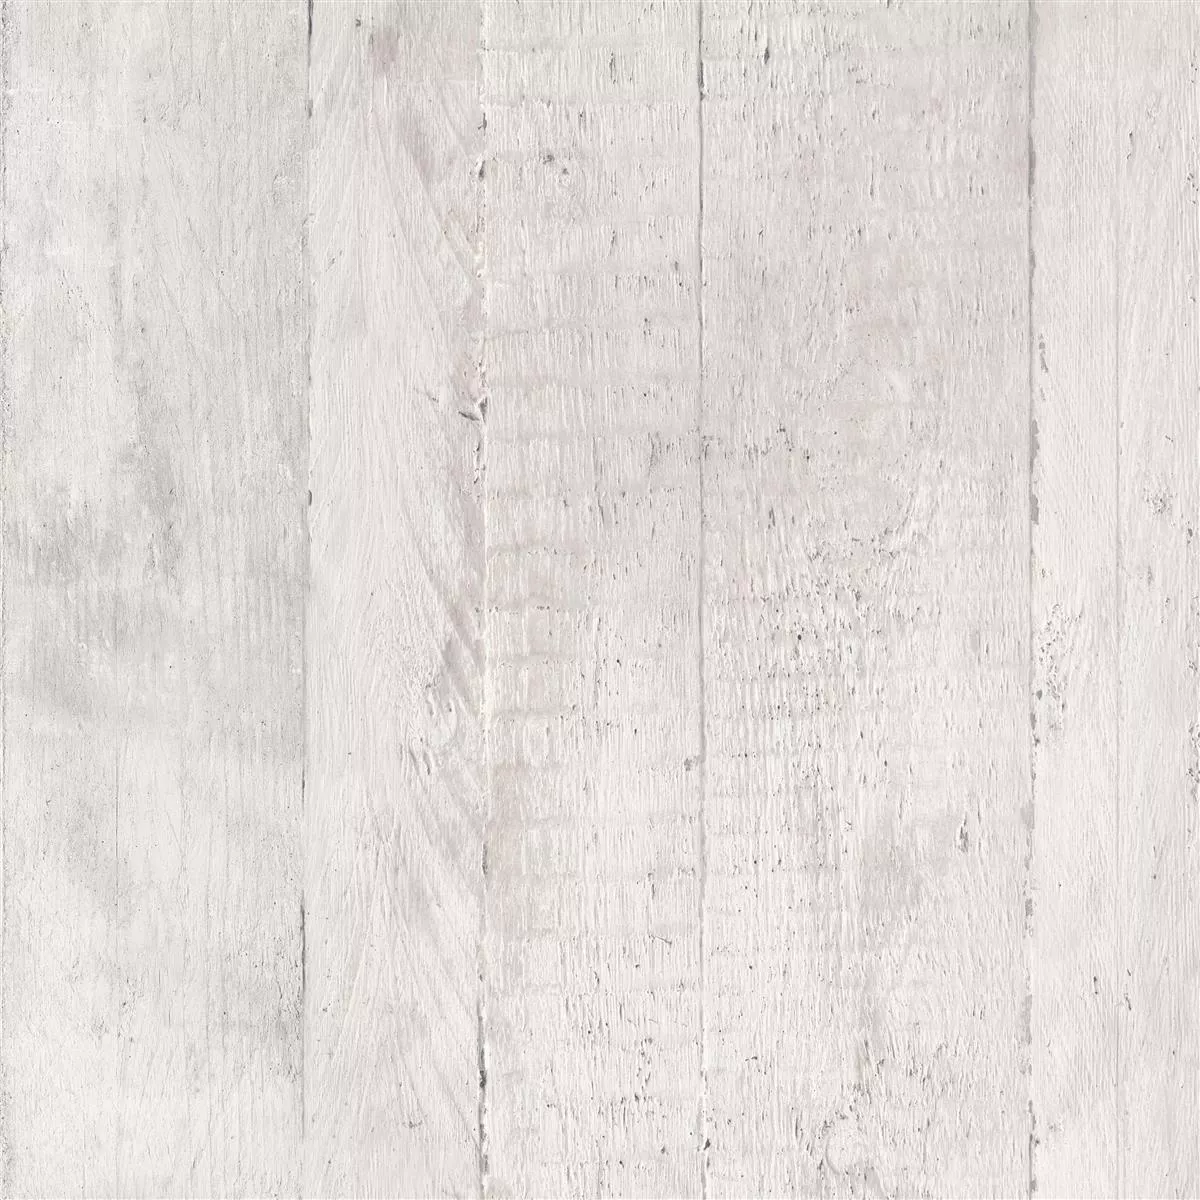 Płytki Podłogowe Gorki Wygląd Drewna 60x60cm Oszklony Biały